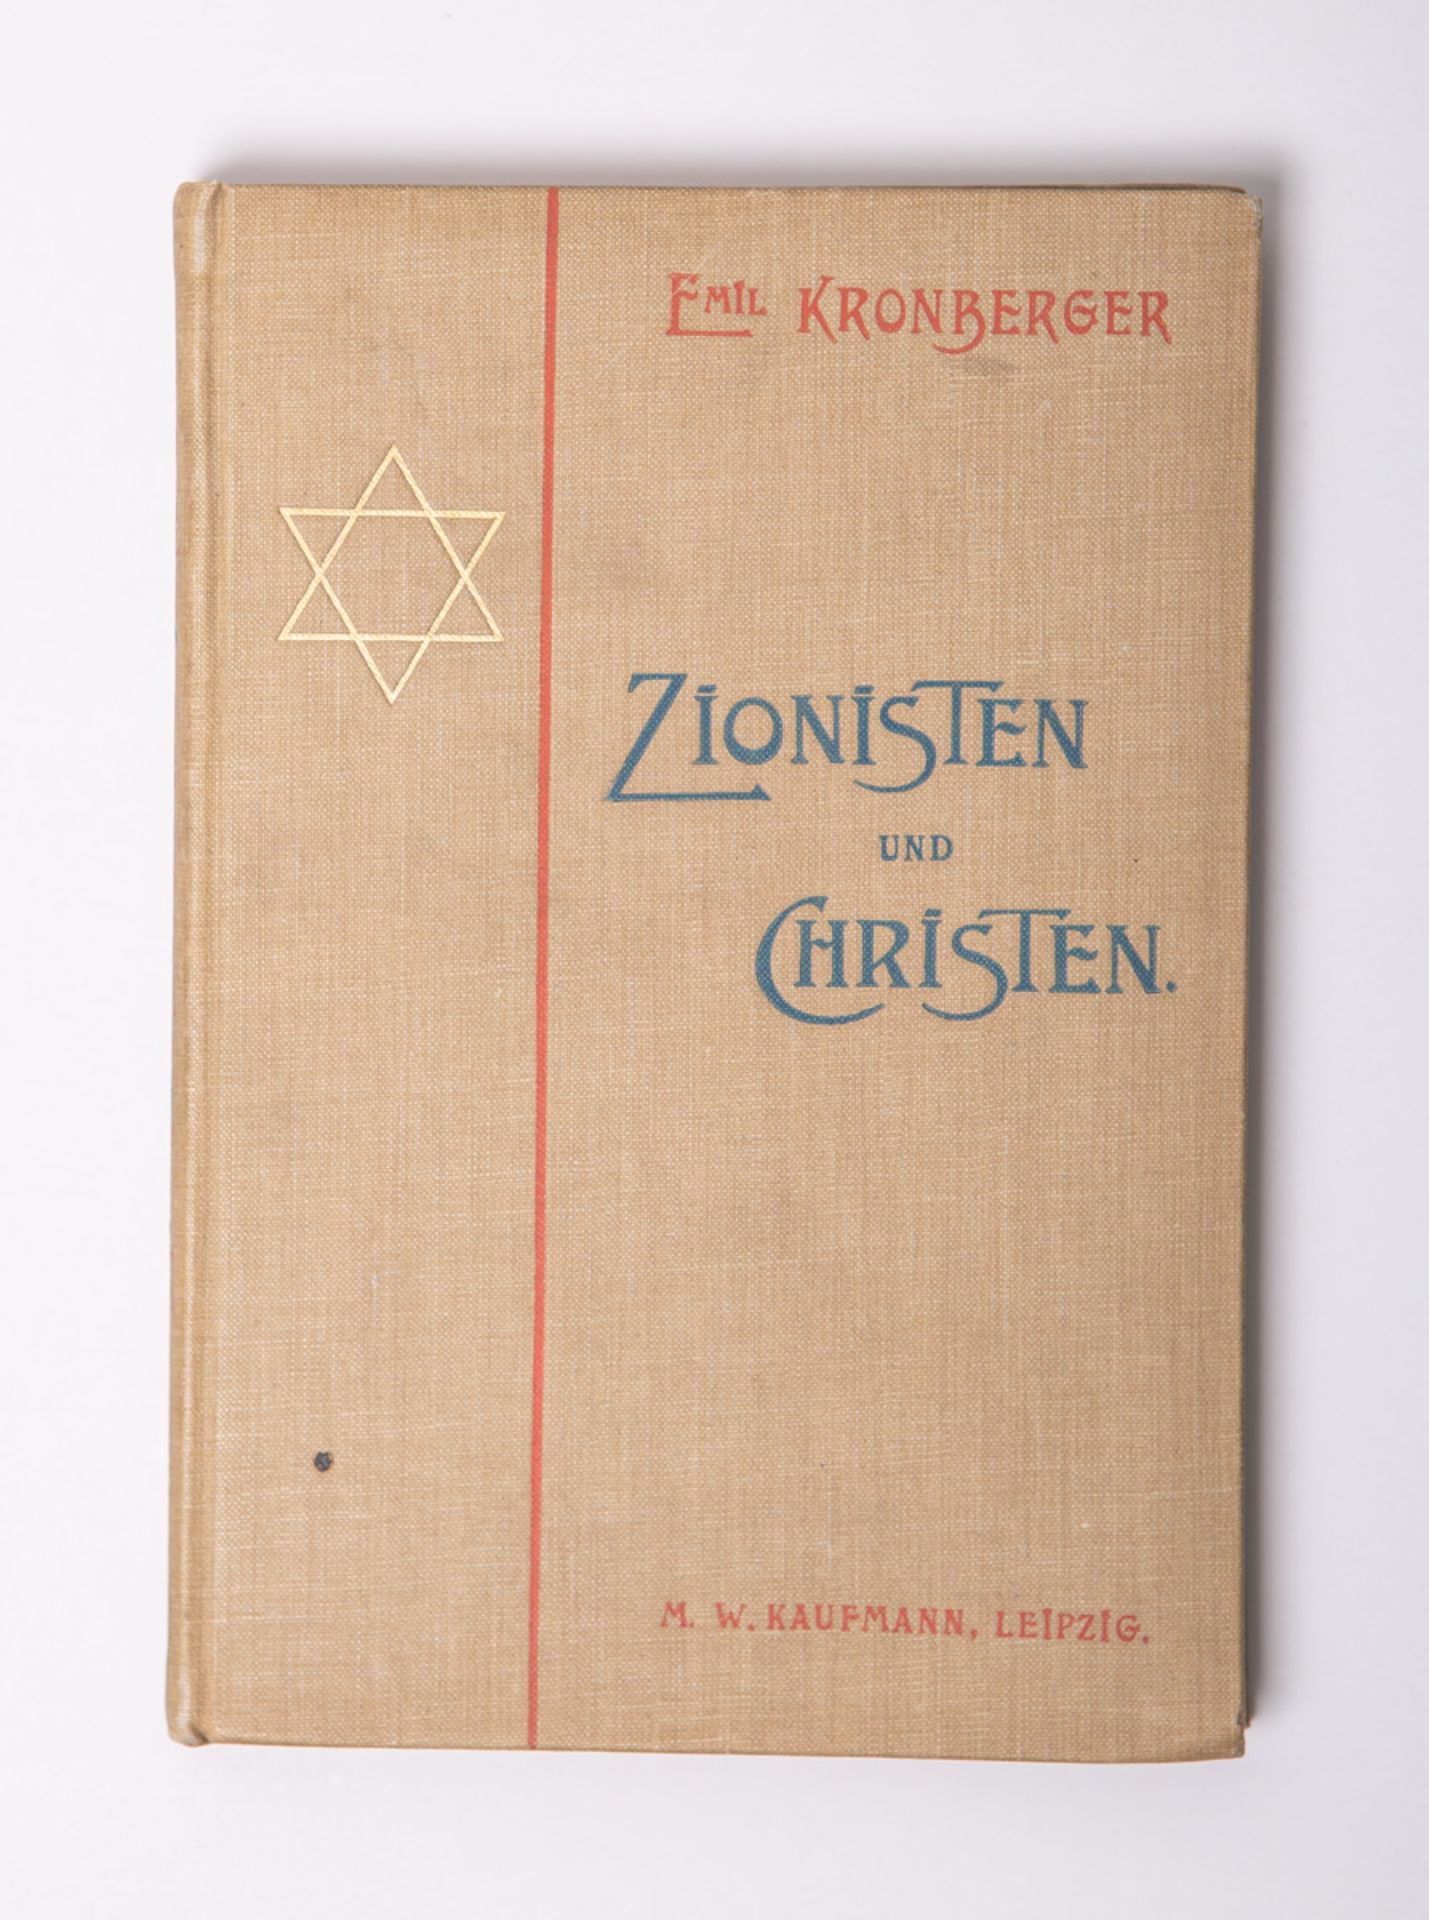 Kronberger, Emil, "Zionisten und Christen. Ein Beitrag zur Erkenntnis des Zionismus" - Bild 2 aus 2